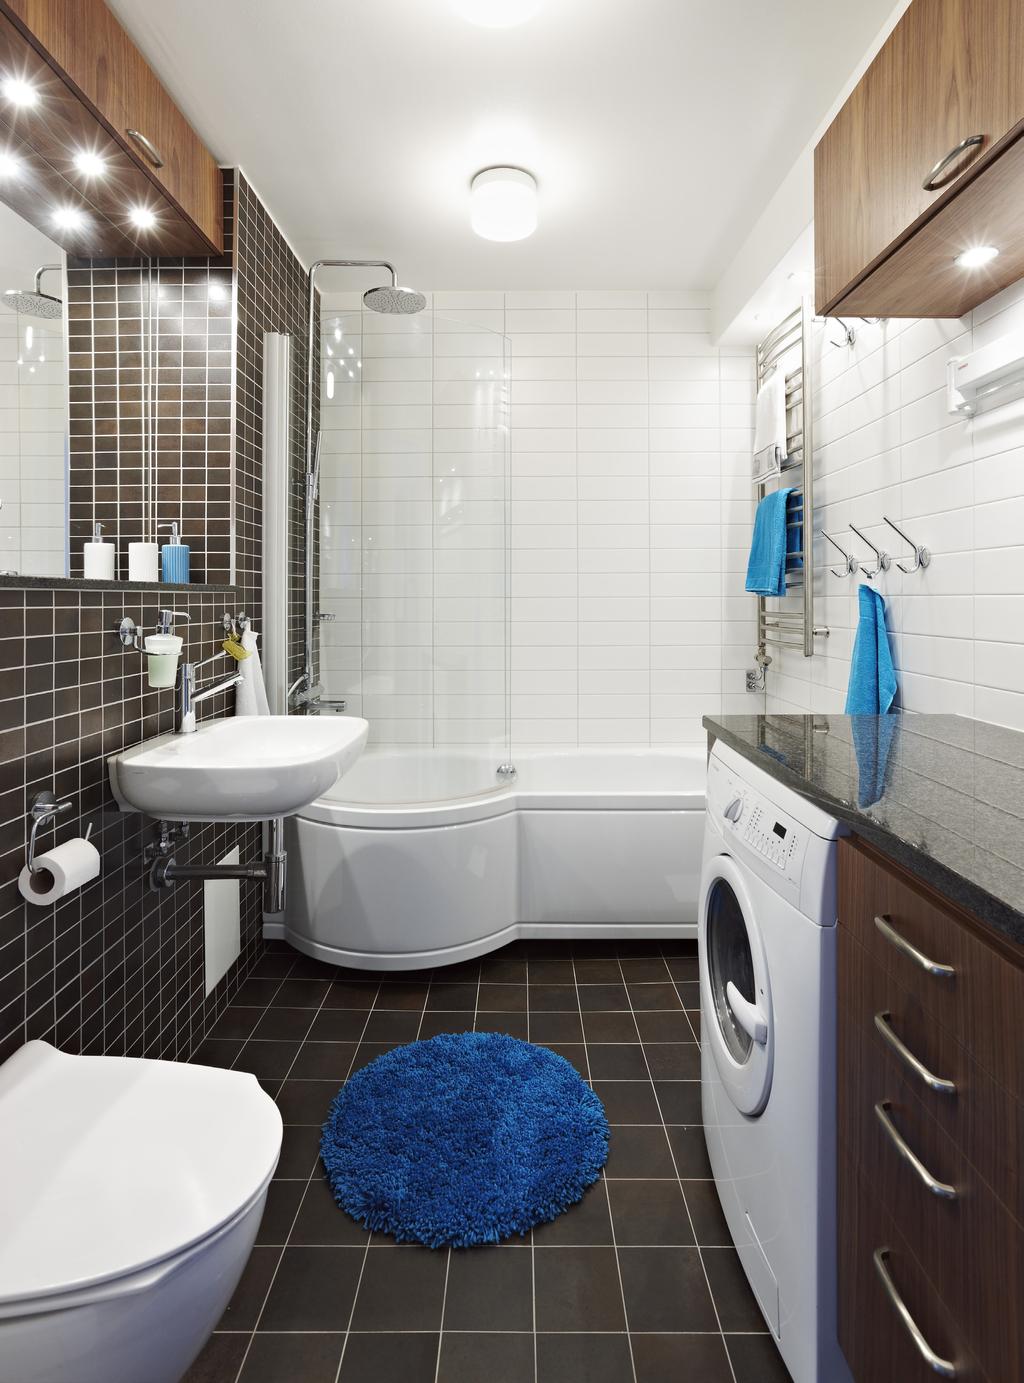 Badrummet Rymligt badkar med duschplats/glasdörr från Villeroy & Boch. Kakel och klinker från Golvabia. Ett vanligt lägenhetsbadrum med många funktioner för en stor familj!